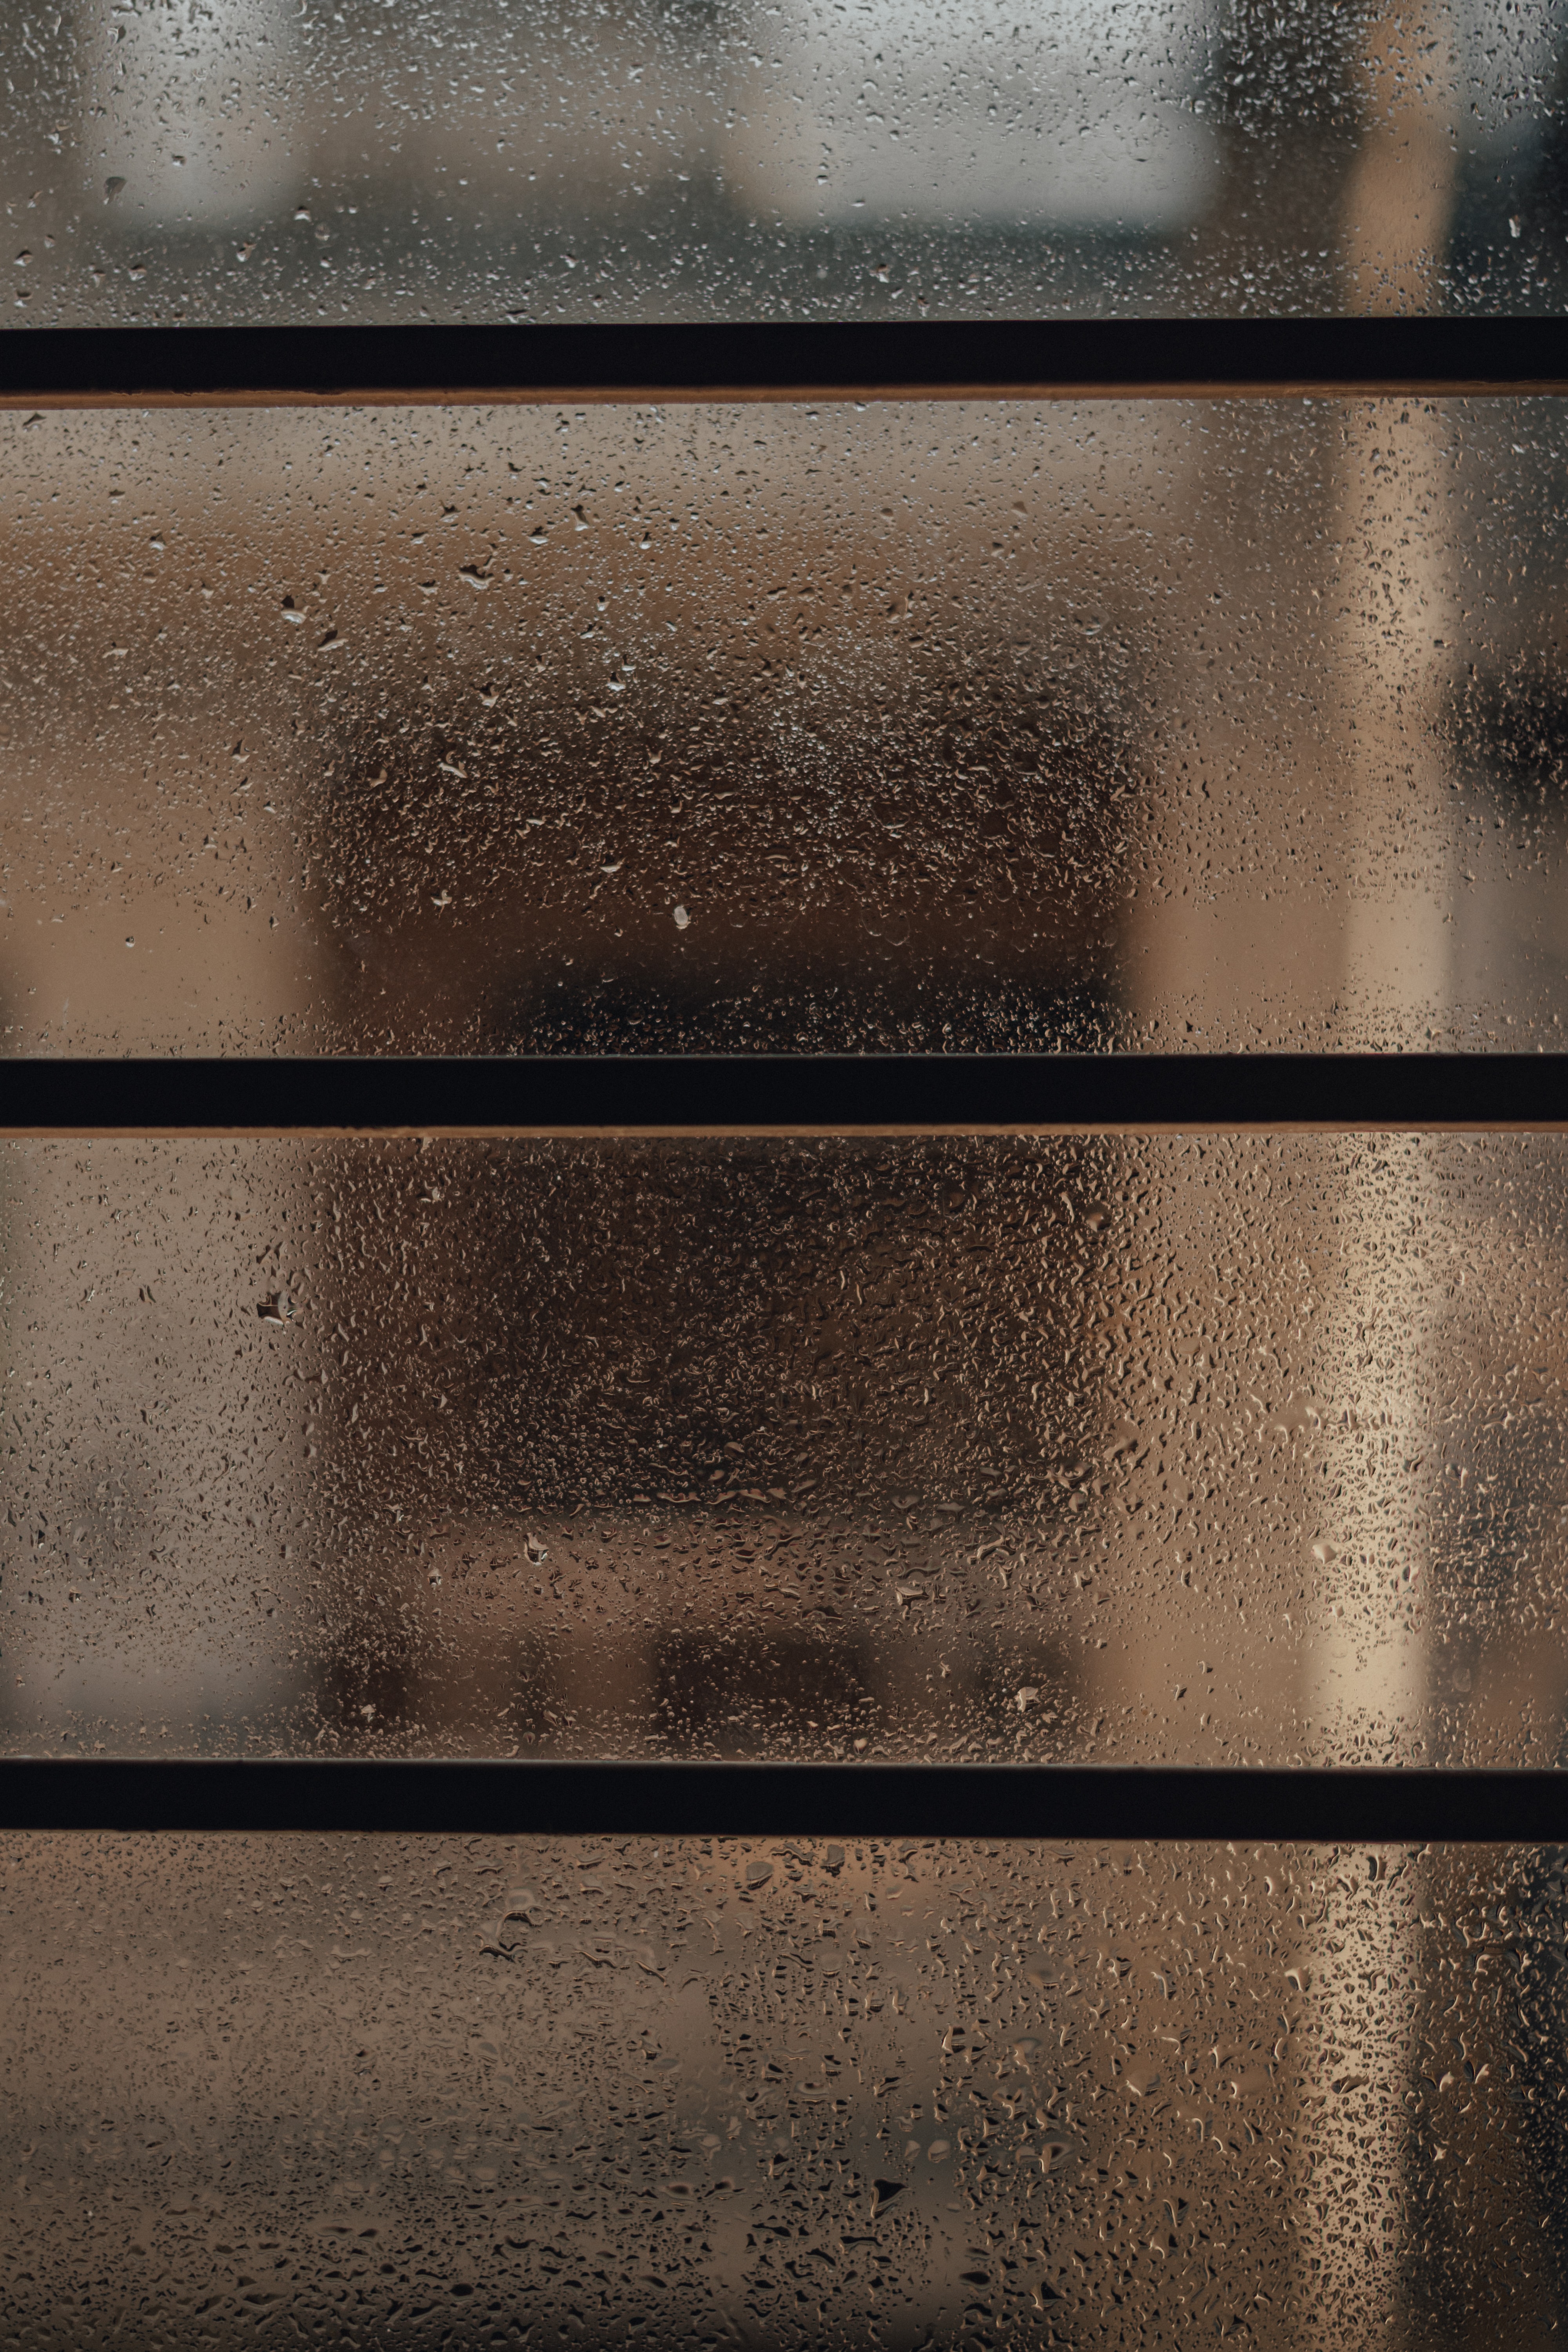 moisture, rain, drops, miscellanea, miscellaneous, glass, window Full HD